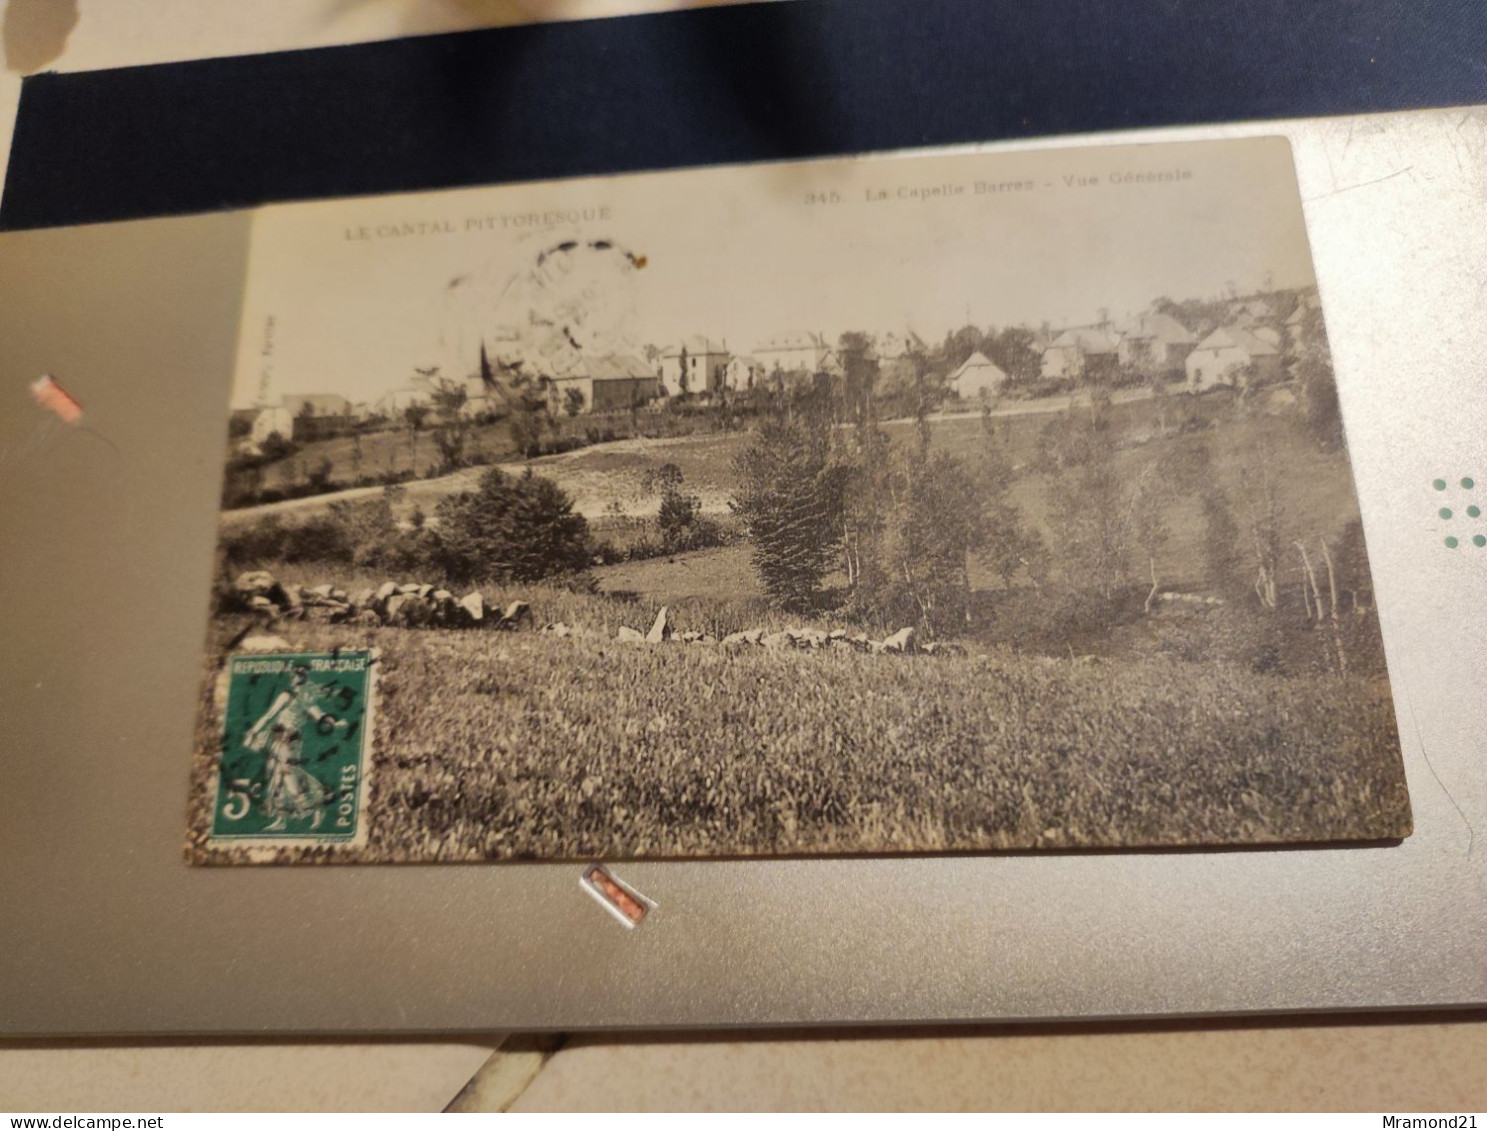 Cartes postales anciennes du Cantal